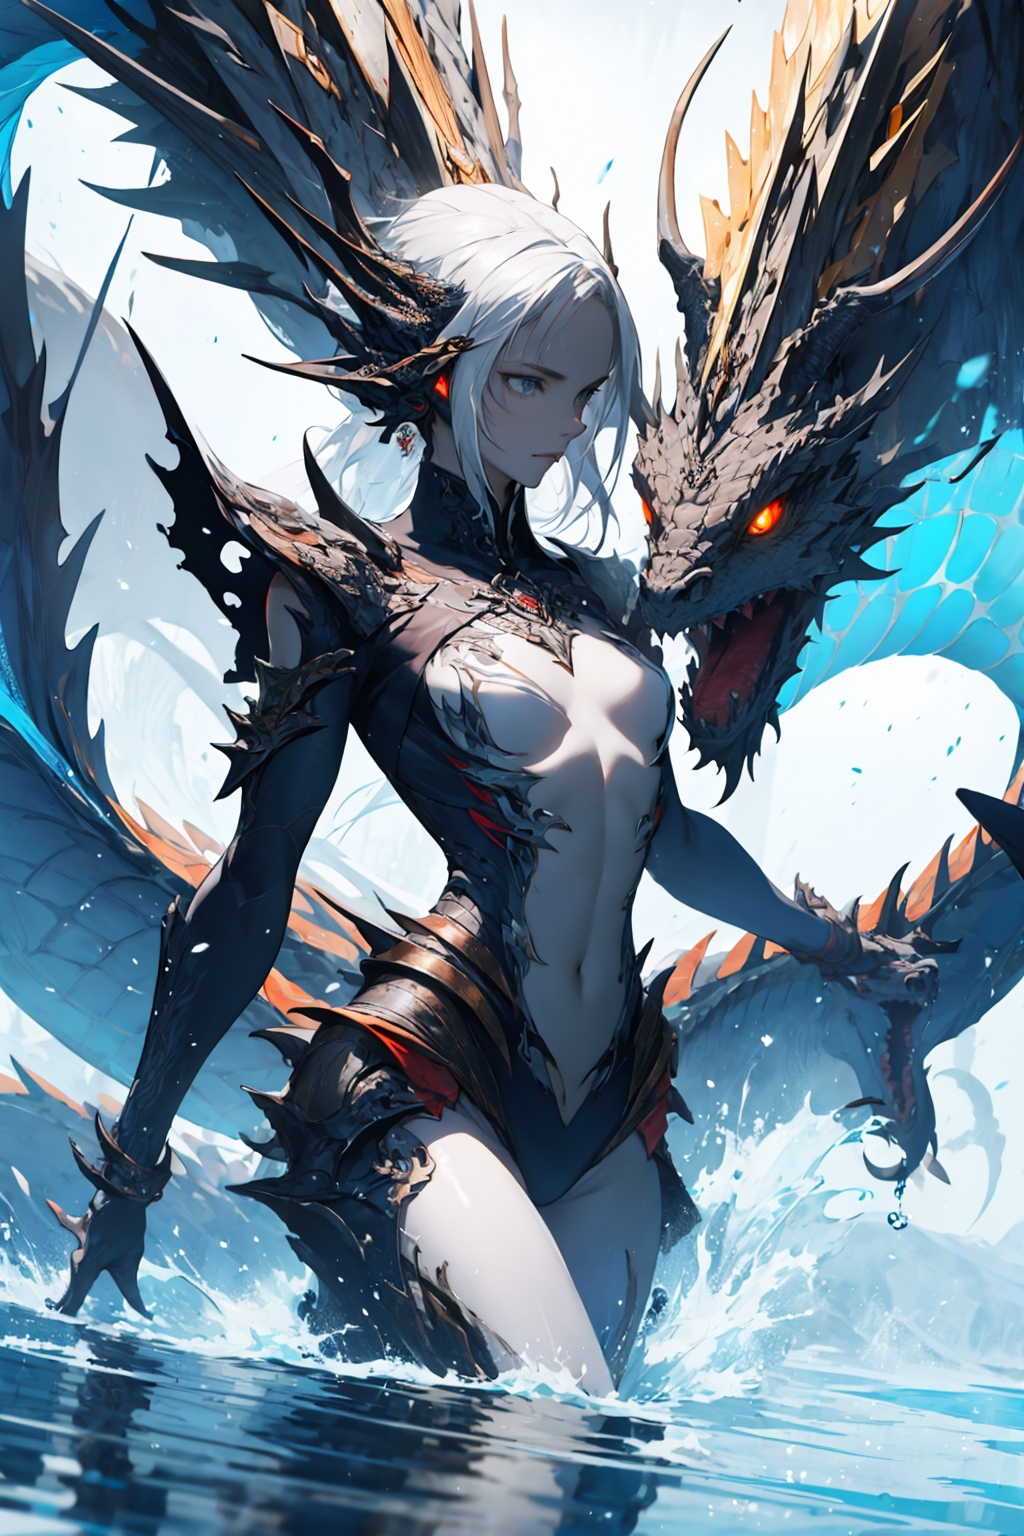 Anime Boy and Dragon Fantasy by NWAwalrus on DeviantArt